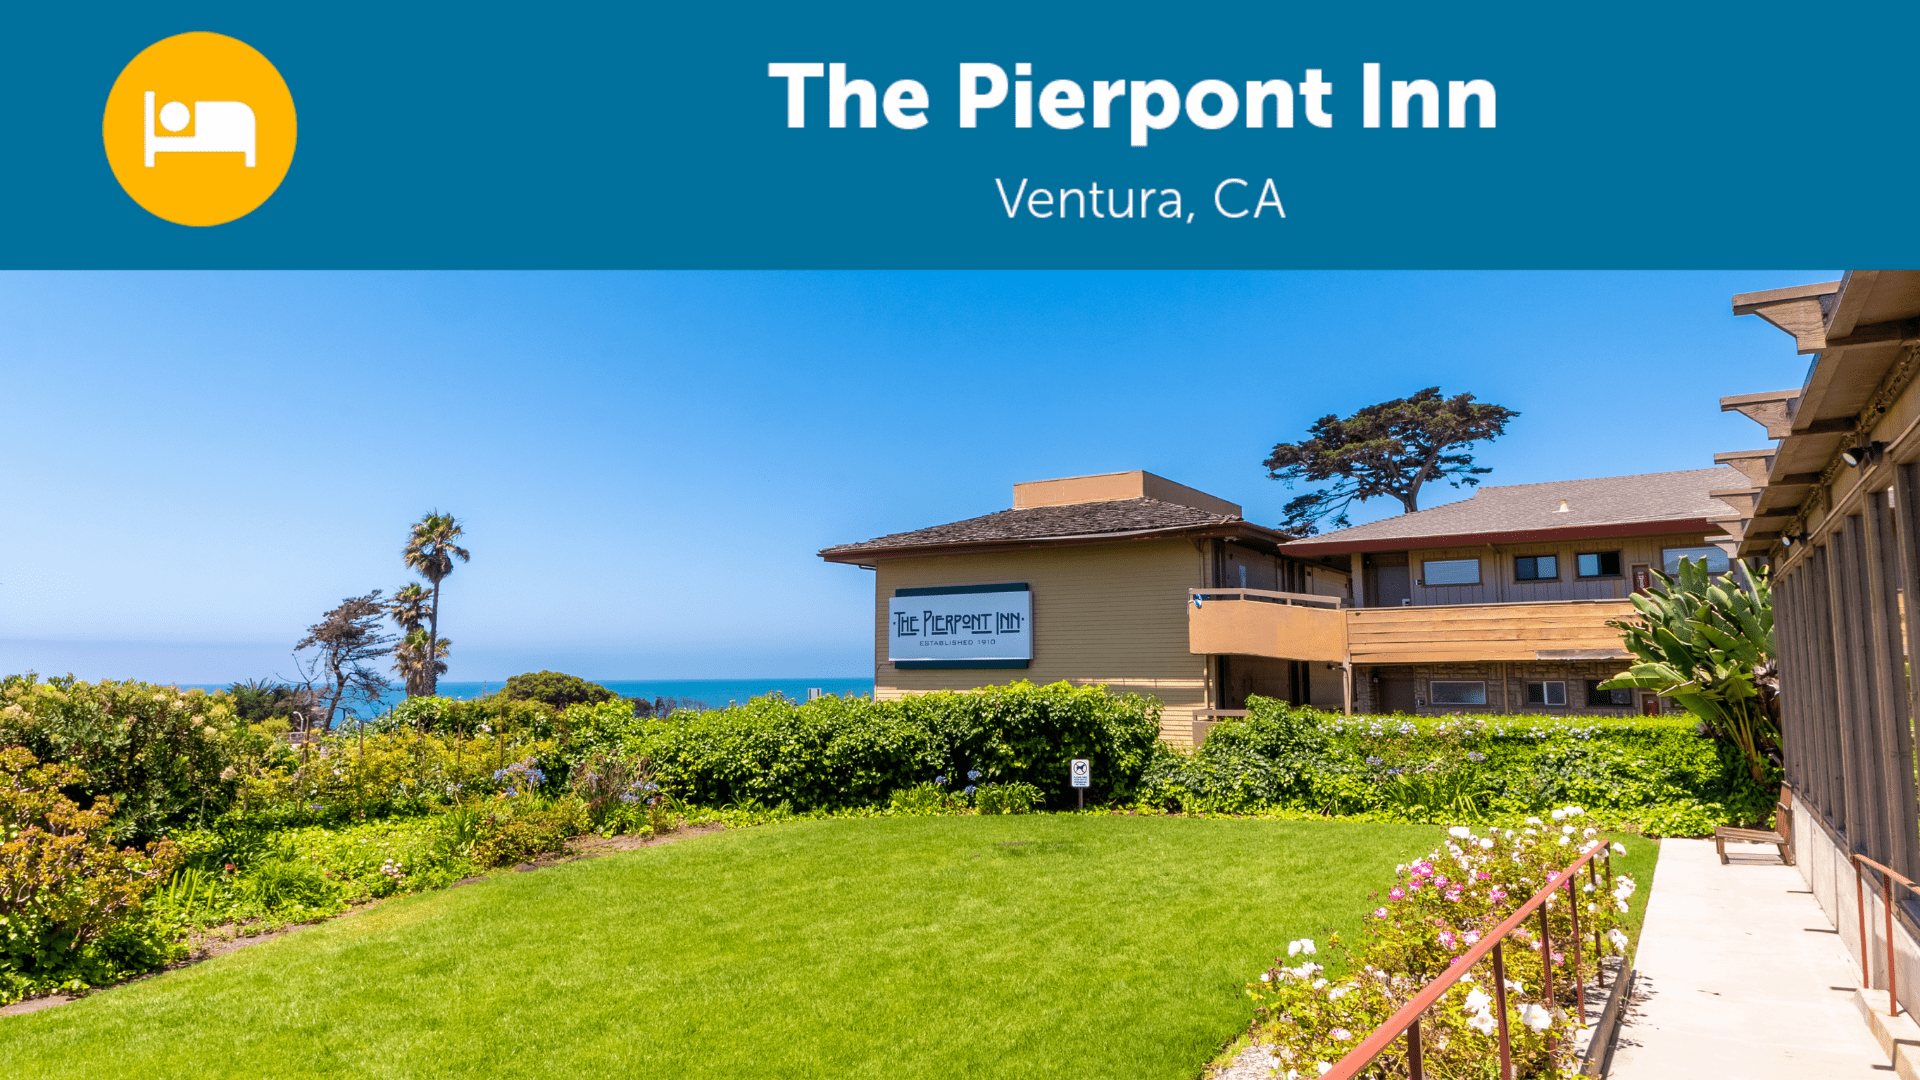 Pierpont Inn Ventura, CA